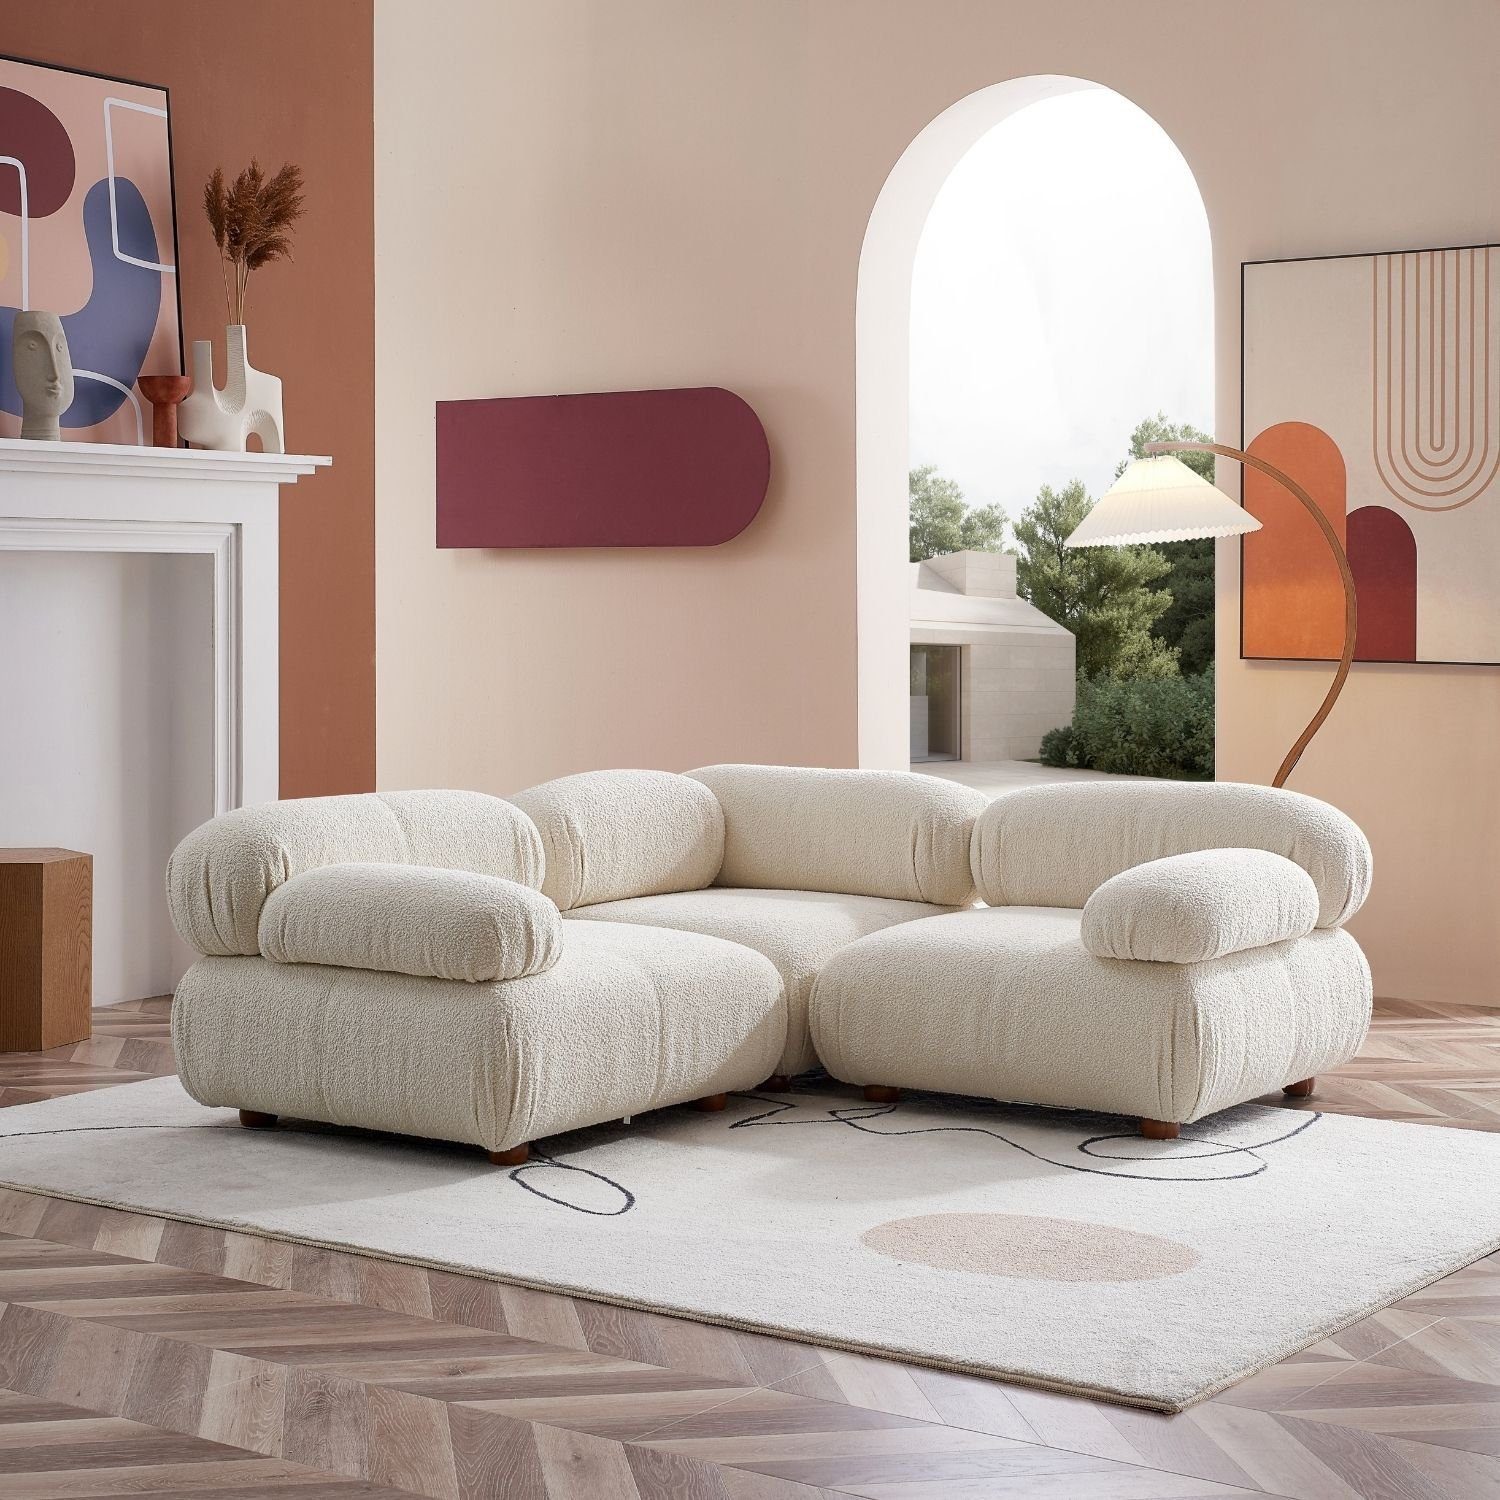 Aufbau aus enthalten! Komfortschaum im neueste Touch Generation und Sitzmöbel Knuffiges Weiß-Beige-Lieferung Sofa Preis me